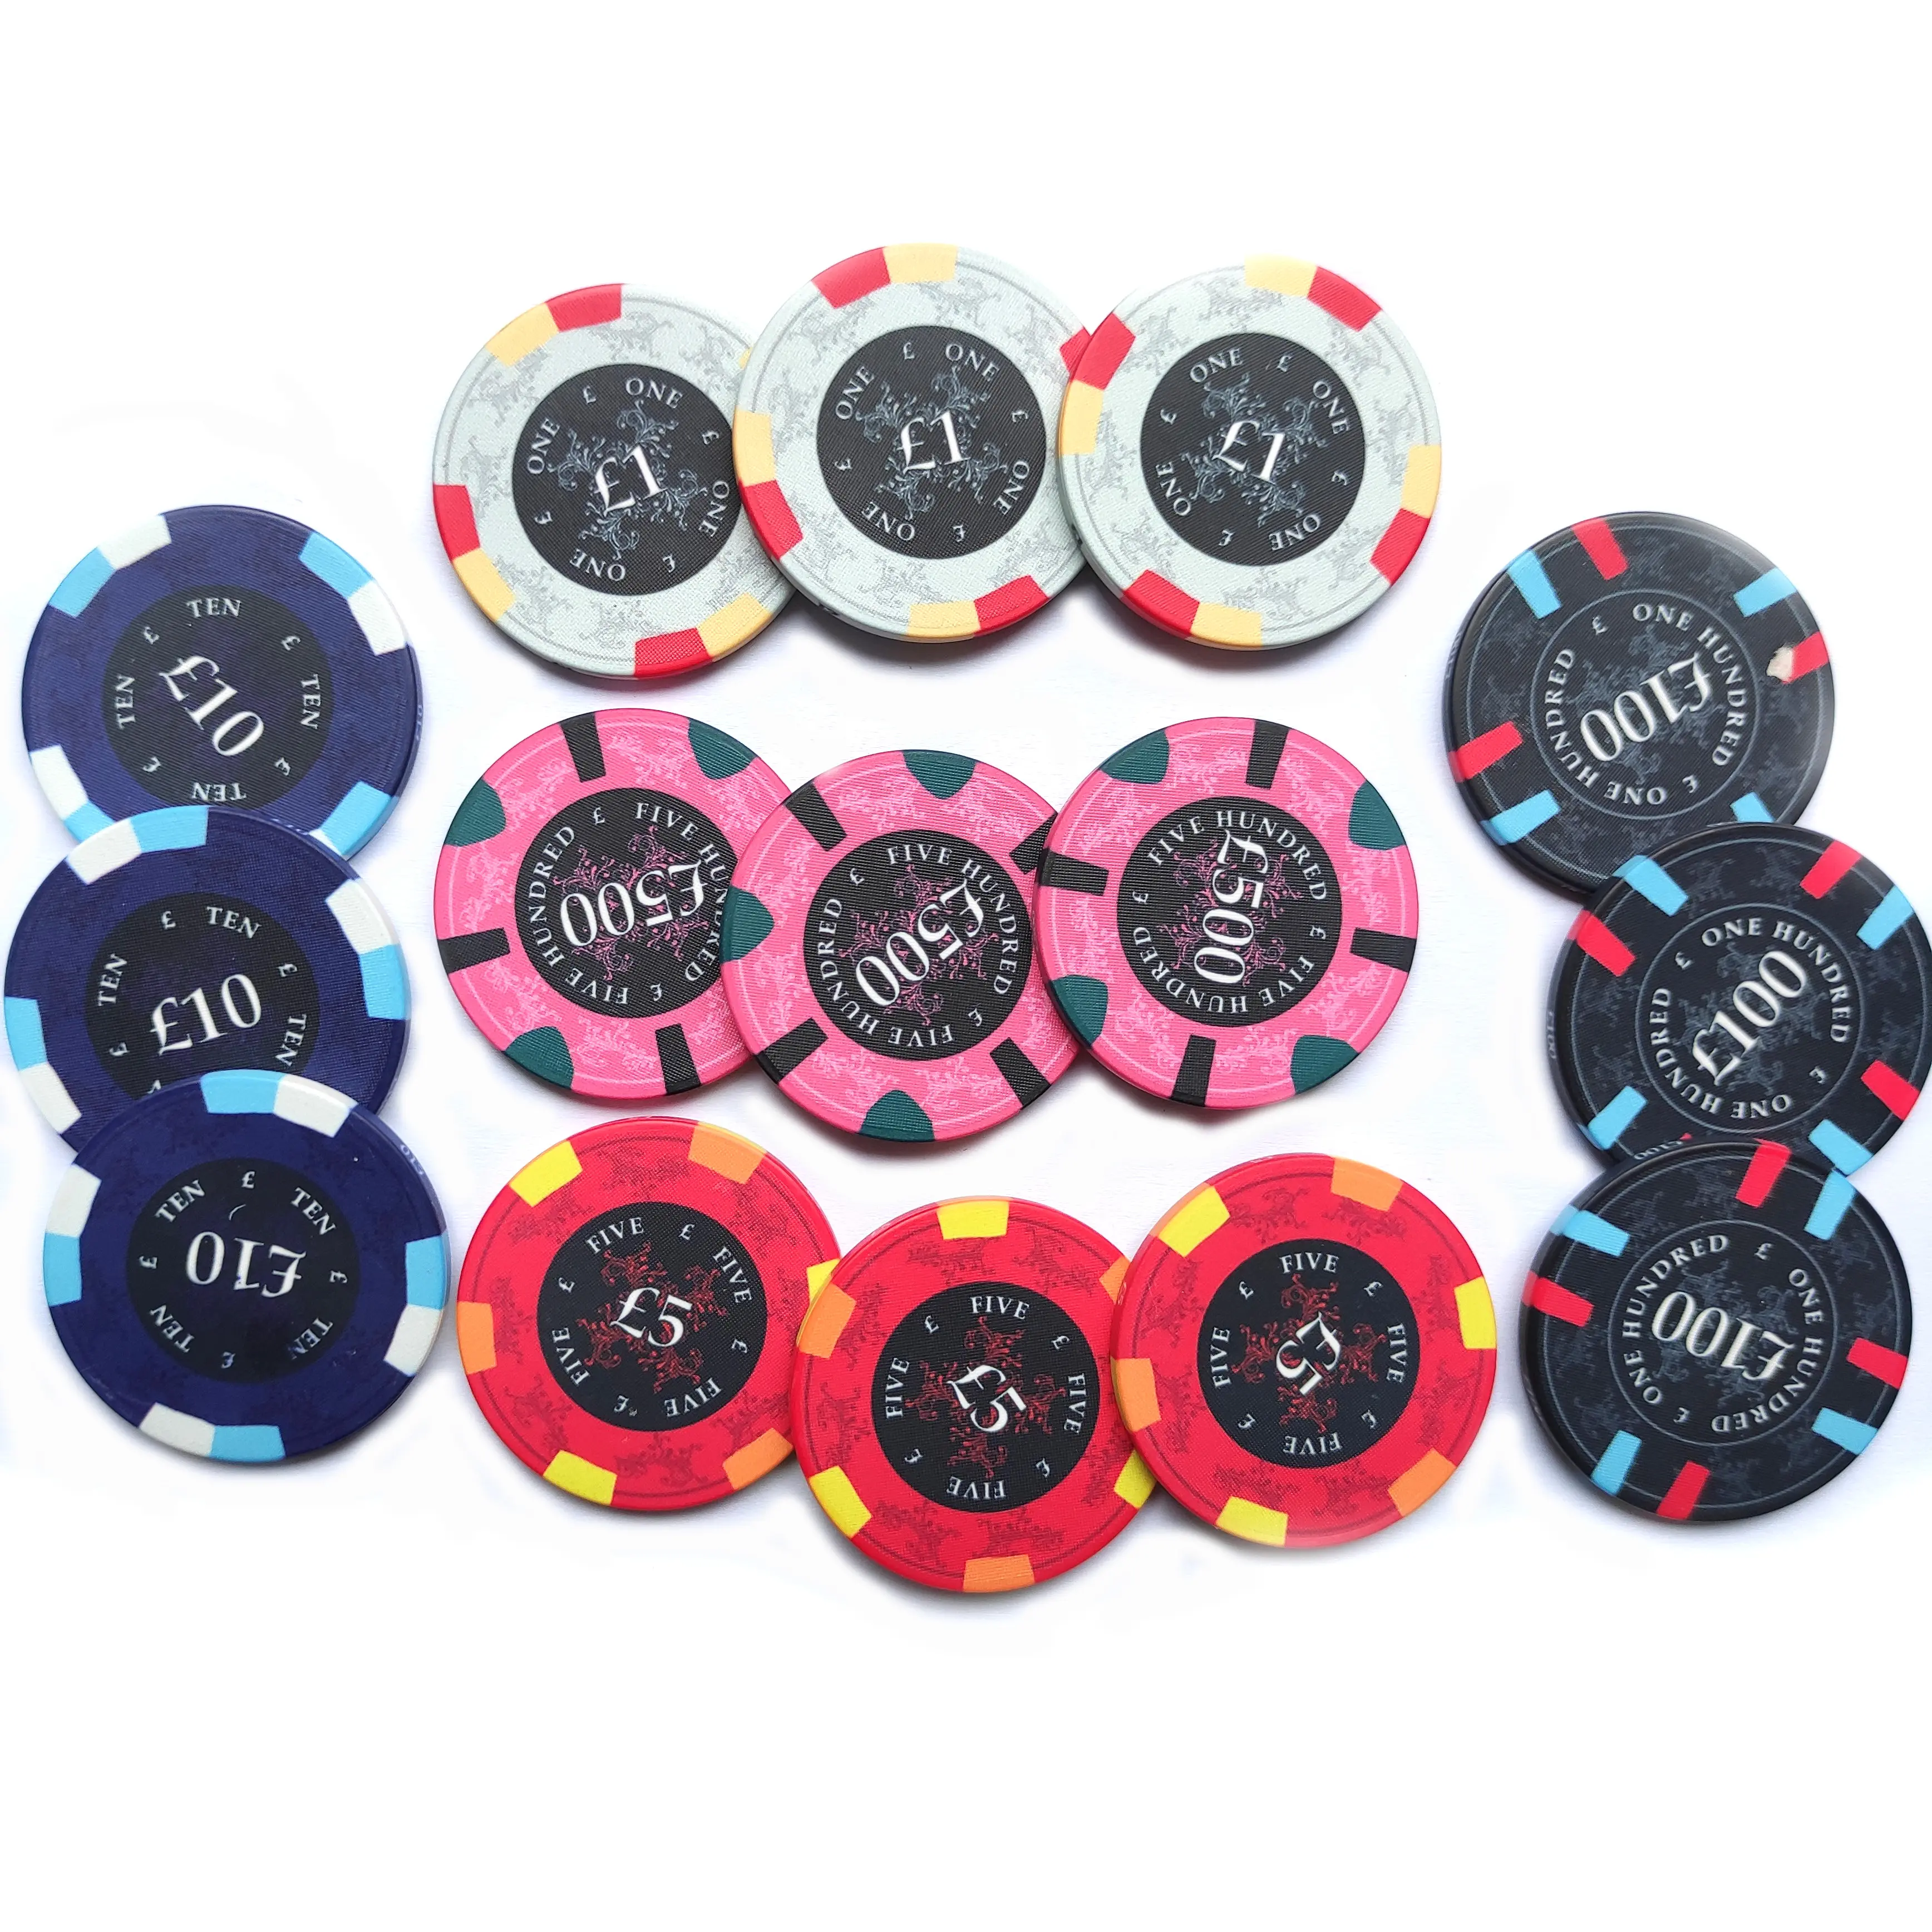 Kustom Naga Keberuntungan Cina 39Mm 10G Chip Poker Tanah Liat Keramik untuk Kasino